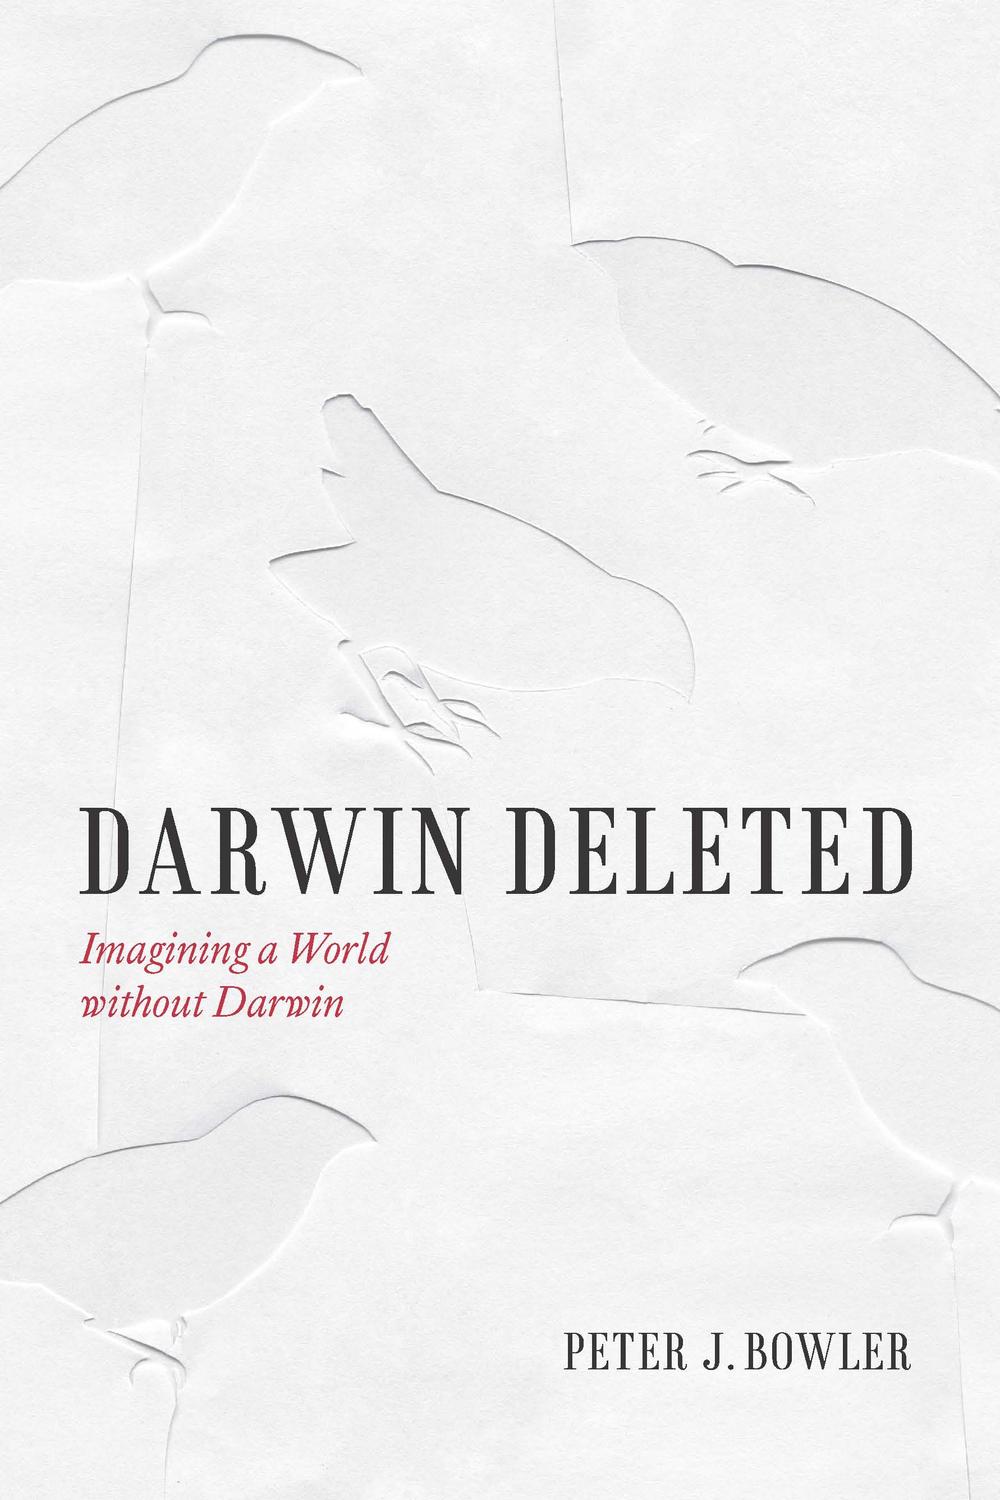 Darwin Deleted - Peter J. Bowler